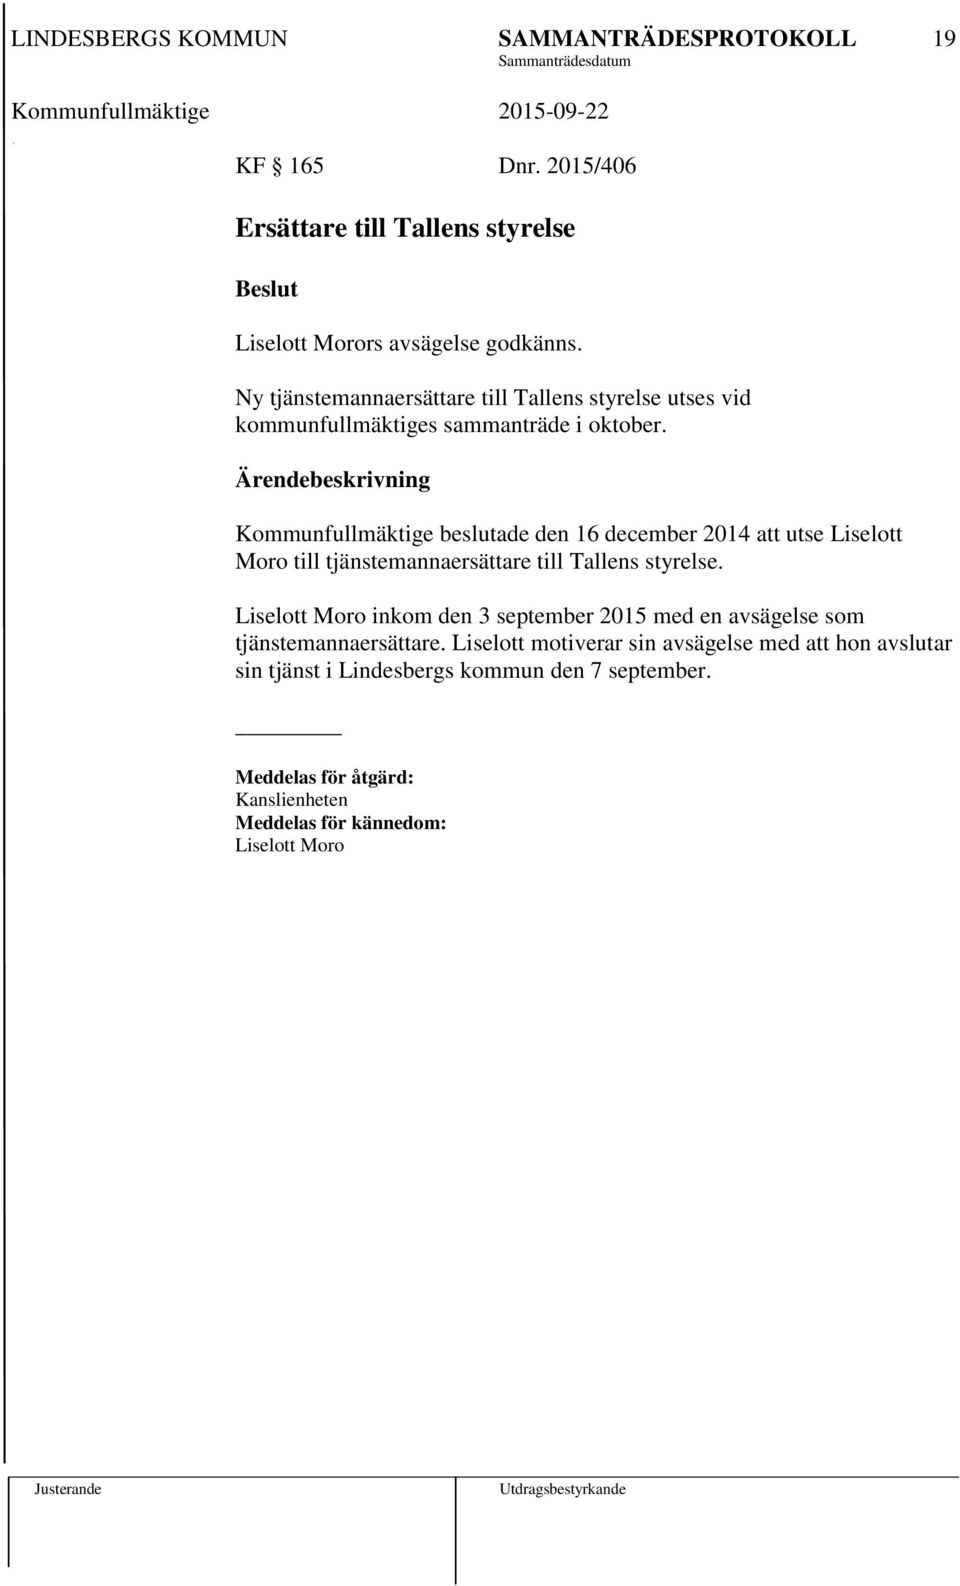 Kommunfullmäktige beslutade den 16 december 2014 att utse Liselott Moro till tjänstemannaersättare till Tallens styrelse.